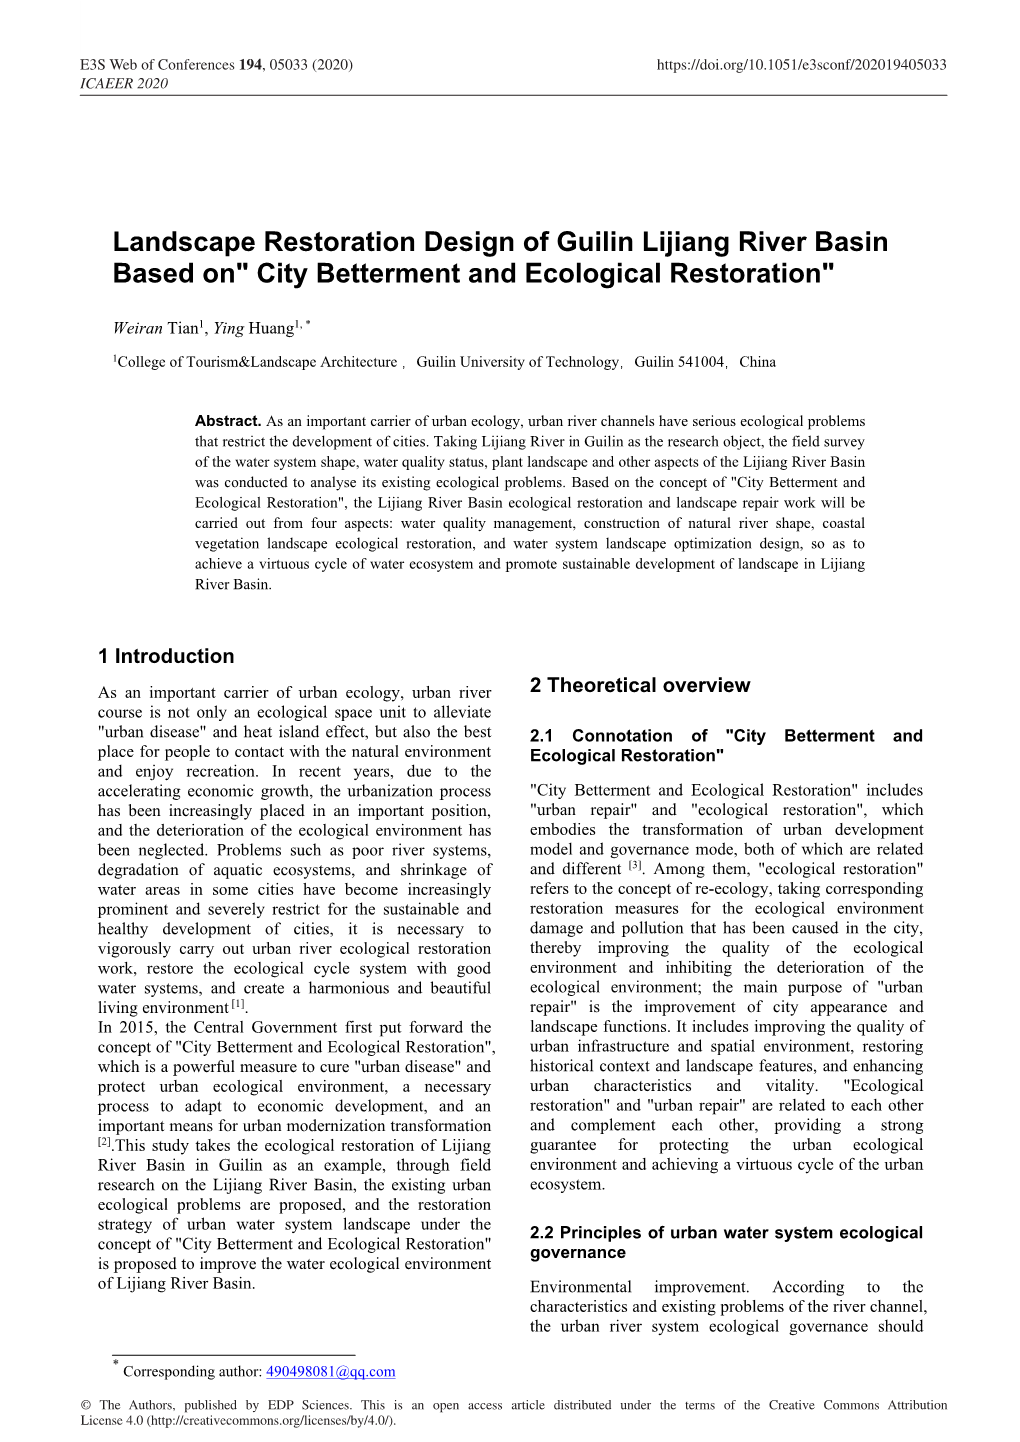 Landscape Restoration Design of Guilin Lijiang River Basin Based On" City Betterment and Ecological Restoration"